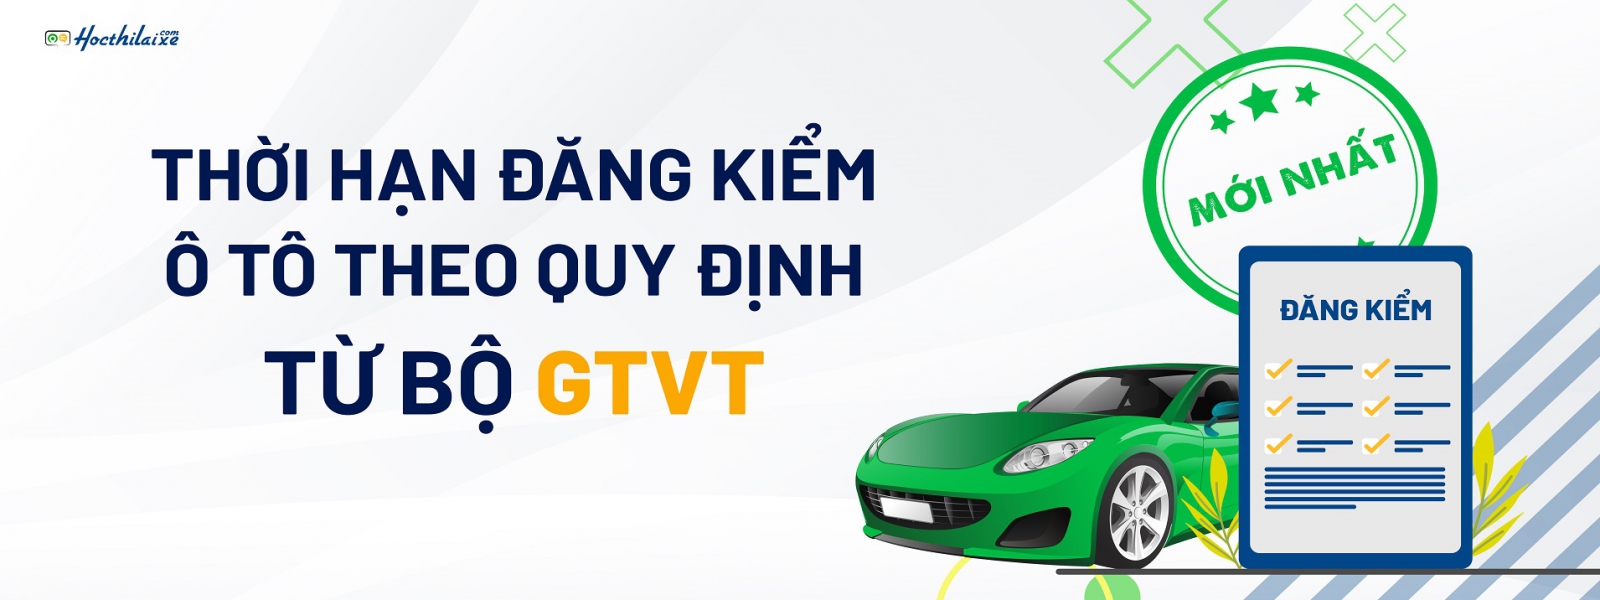 Thời hạn đăng kiểm xe ô tô theo quy định MỚI của Bộ GTVT